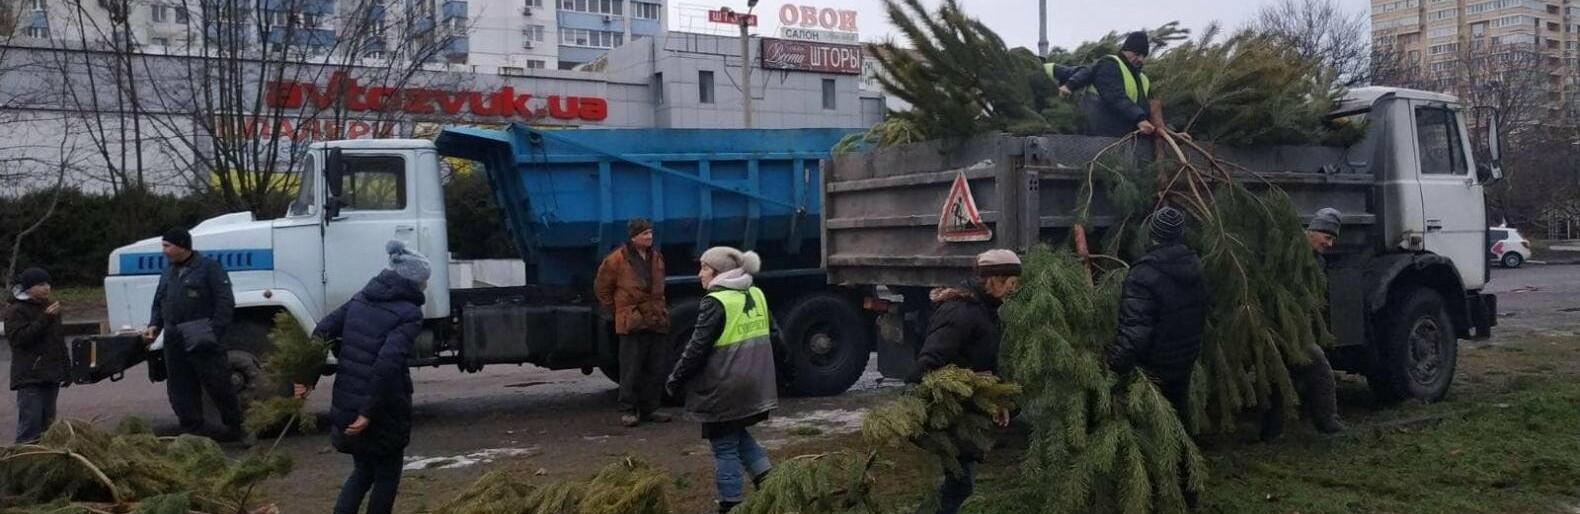 Статья Зачем? Трудно объяснить! Одесские продавцы облили соляркой тысячи елок, которые не продали. ФОТО Утренний город. Одесса